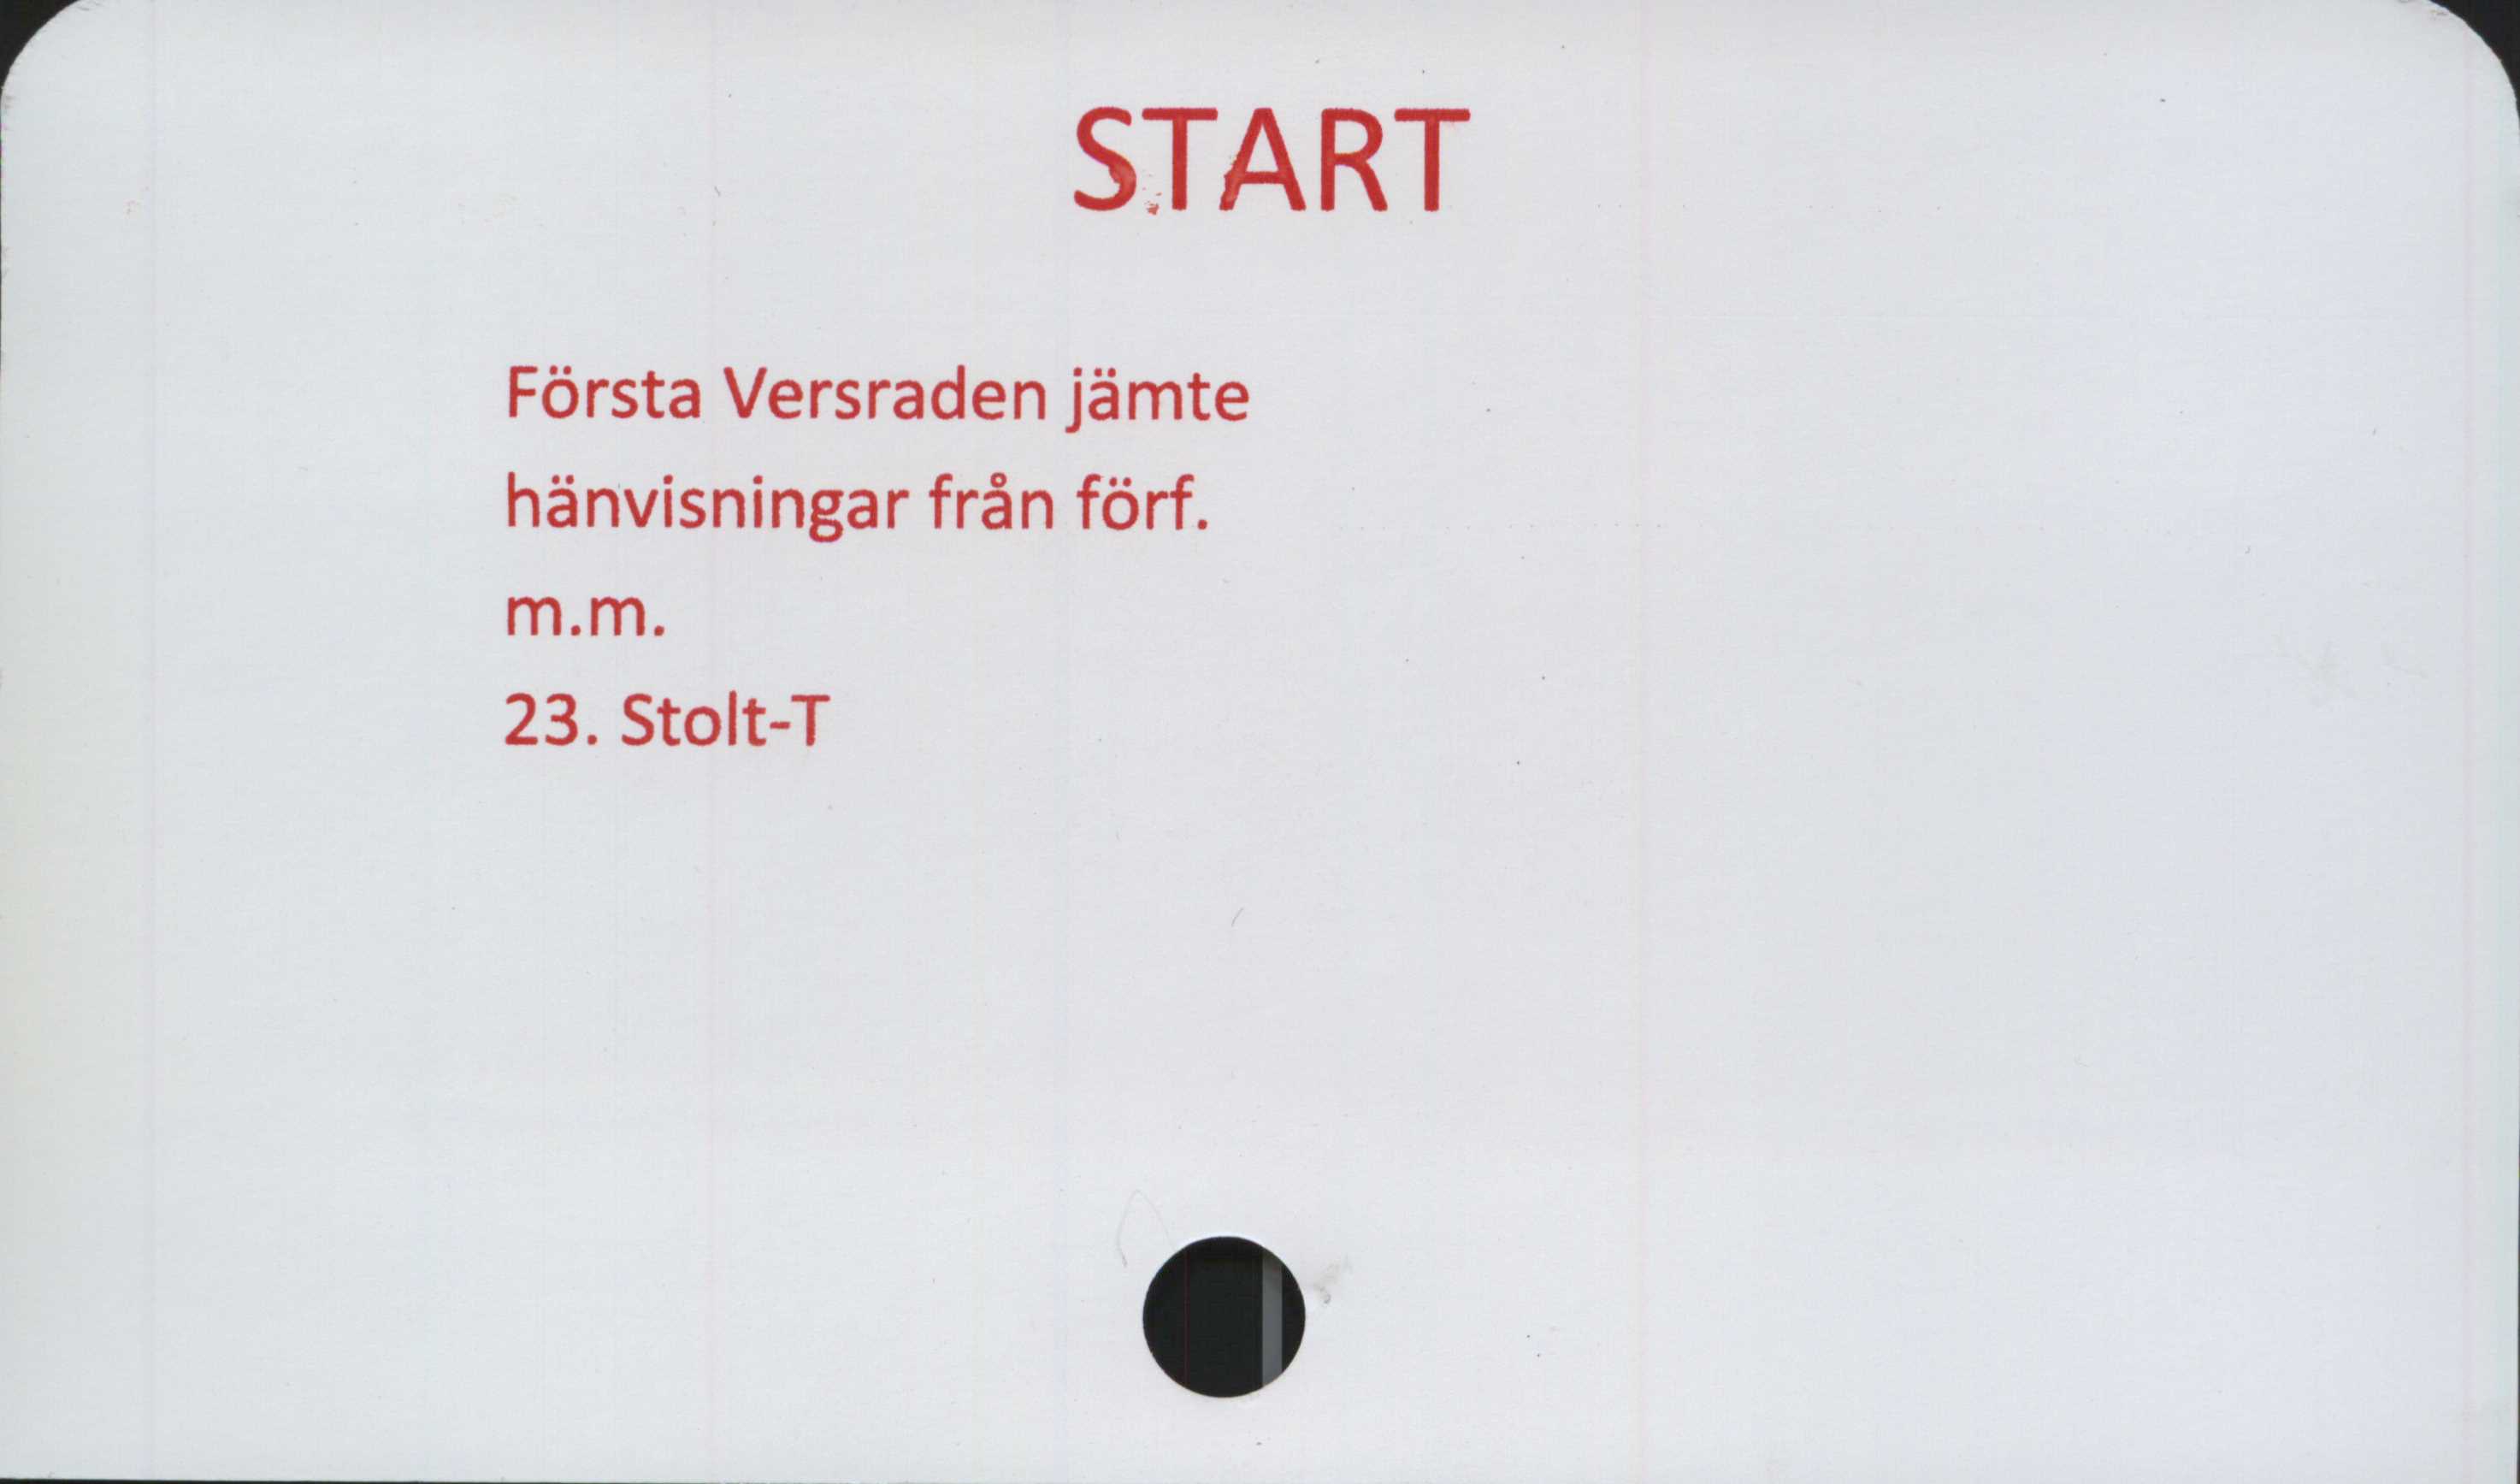  ﻿START

Första Versraden jämte
hänvisningar från förf.
m.m.

23. Stolt-T